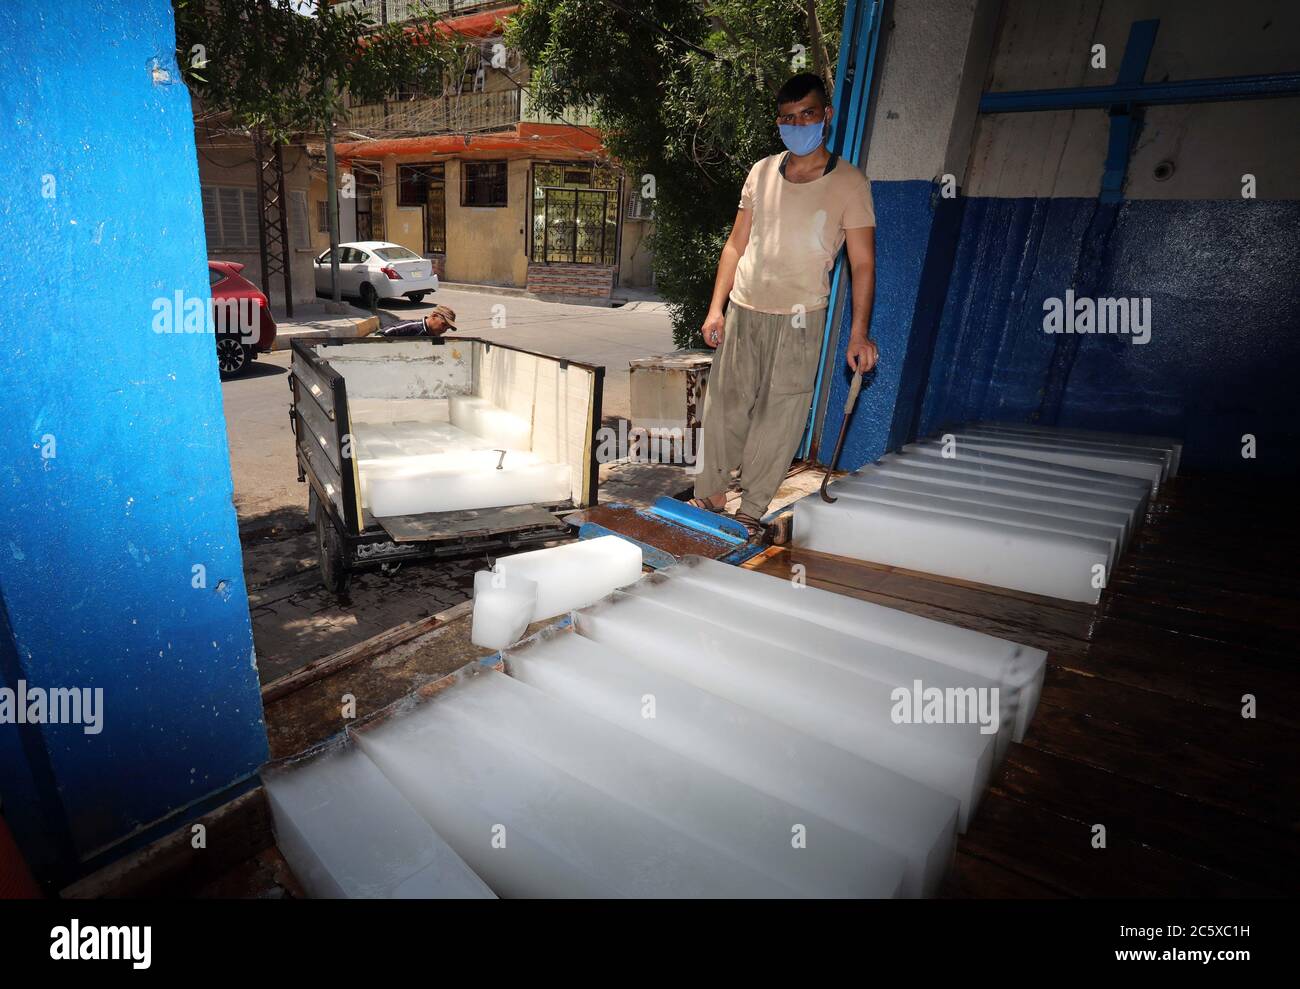 Bagdad. Juli 2020. Ein Mann arbeitet am 5. Juli 2020 in einer Eiswerkstatt in Bagdad, Irak. Da sich die Temperatur in Bagdad um 50 Grad Celsius nähert, gedeiht die Eisherstellung hier mit der steigenden Nachfrage nach Eisblöcken. Quelle: Xinhua/Alamy Live News Stockfoto